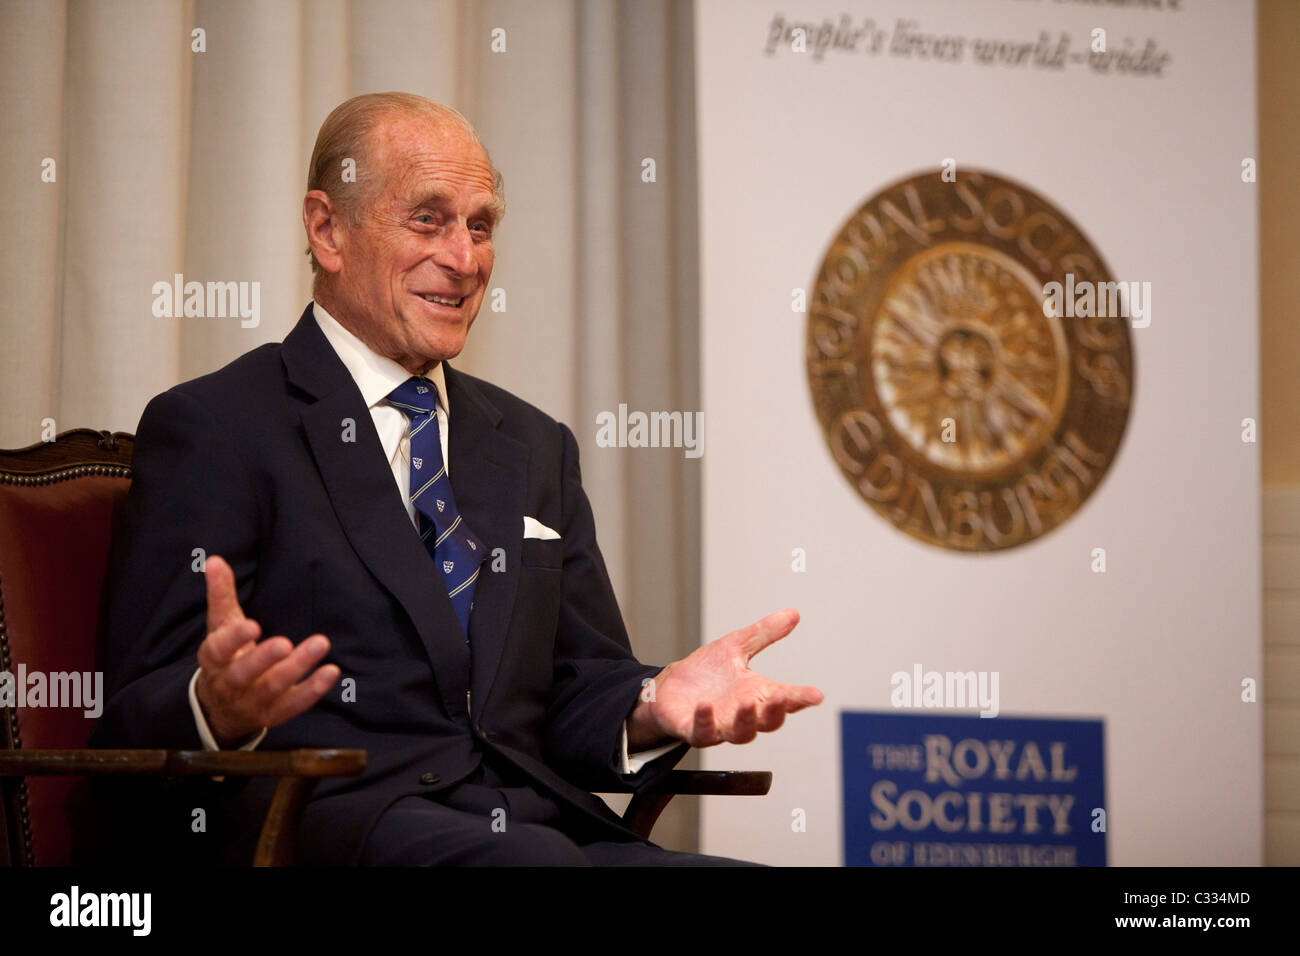 HRH The Duke of Edinburgh bei der Royal Society of Edinburgh, königlichen Medaillen zu präsentieren Stockfoto